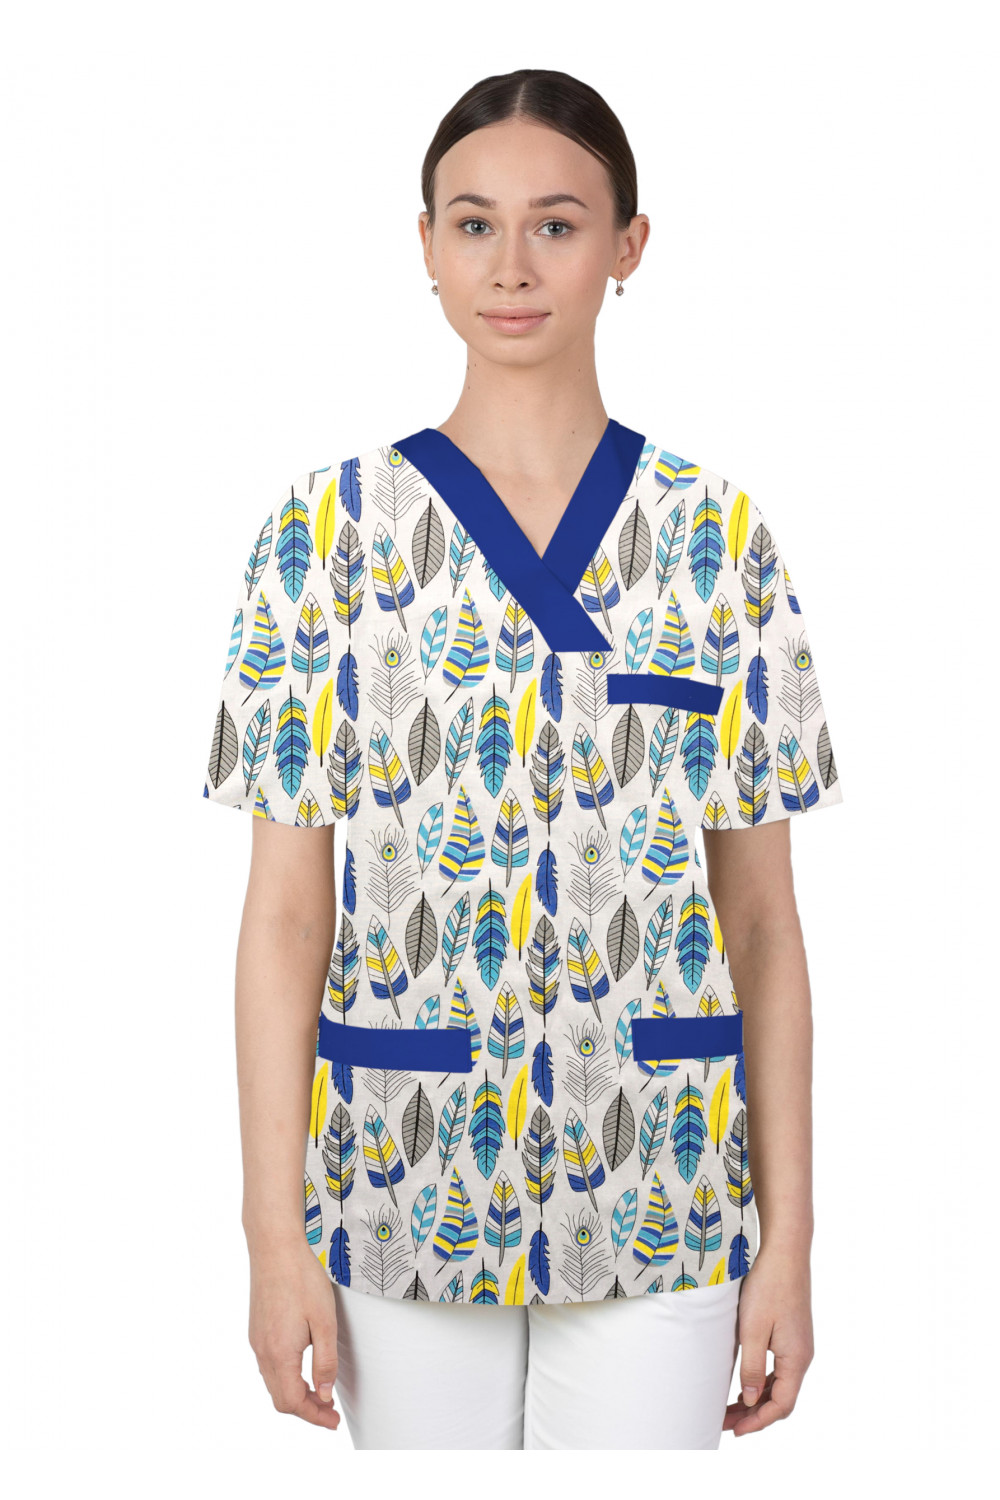 Bluza medyczna we wzorki kolorowa damska M-074G piórka niebiesko turkusowo żółte na białym tle